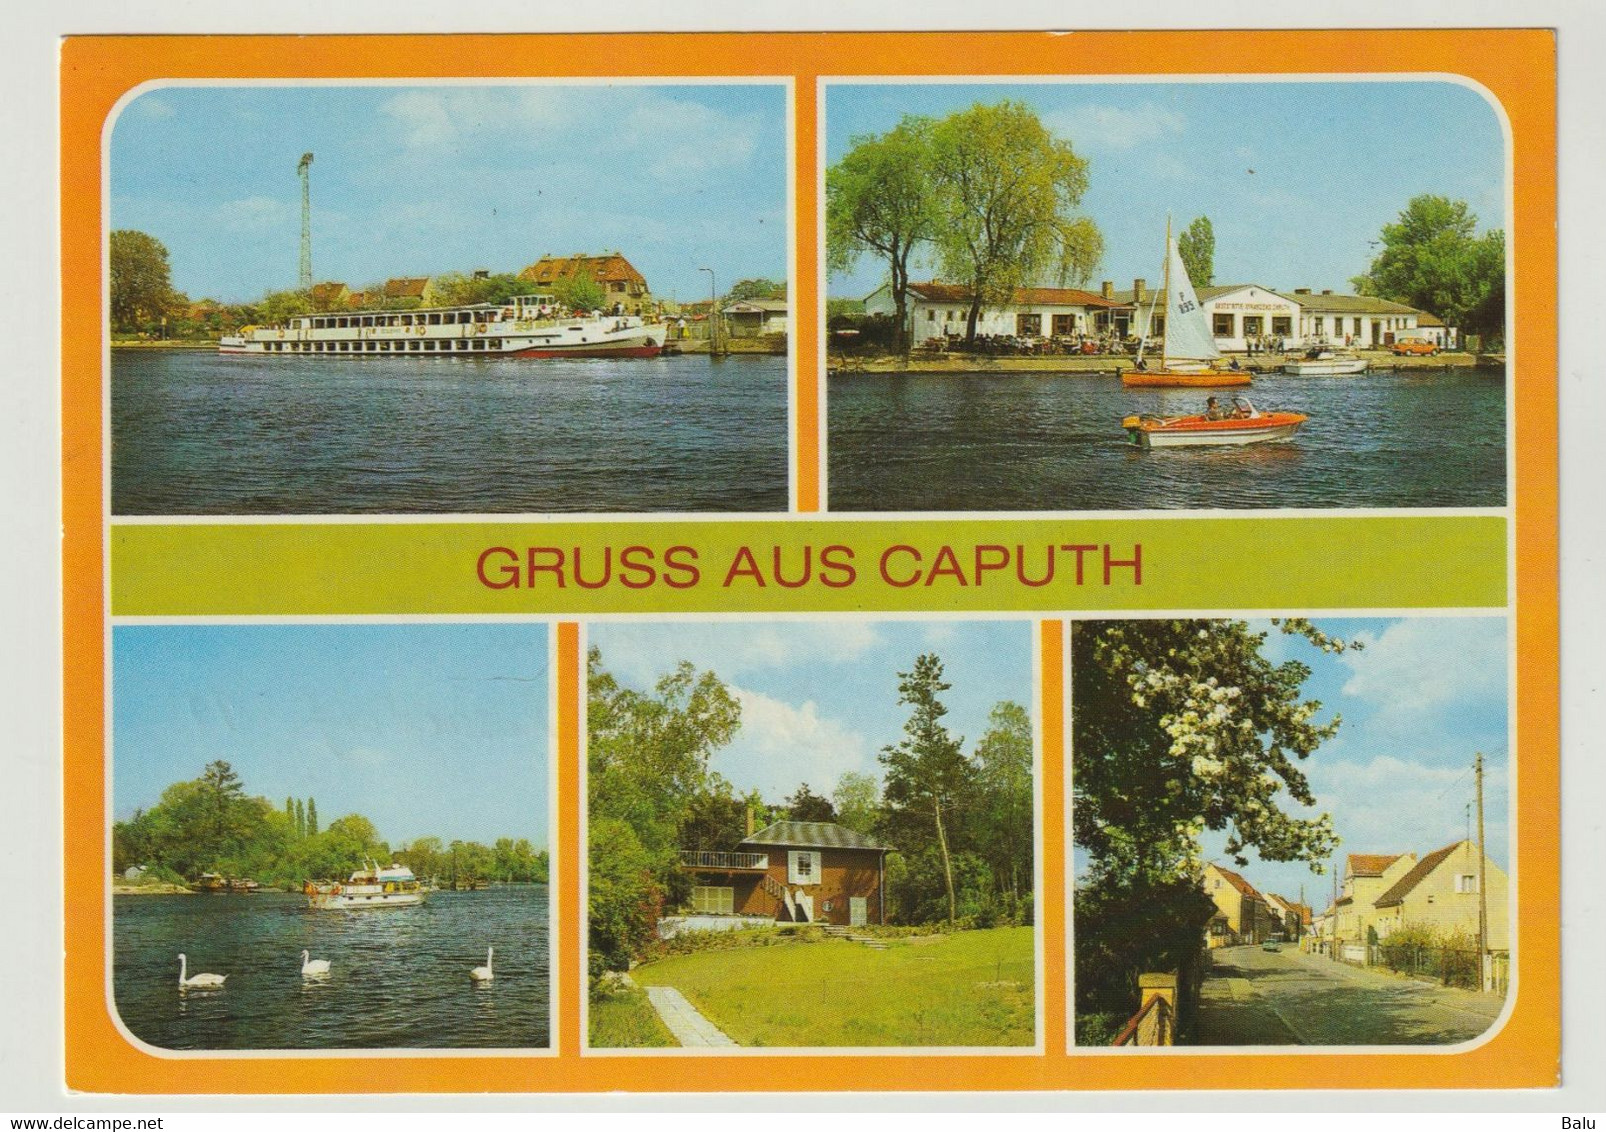 MBK Gruß Aus Caputh Kr. Potsdam 1988 Dampferanlegestelle Strandbad Einsteinhaus, Postalisch Gelaufen, 2 Scans - Caputh